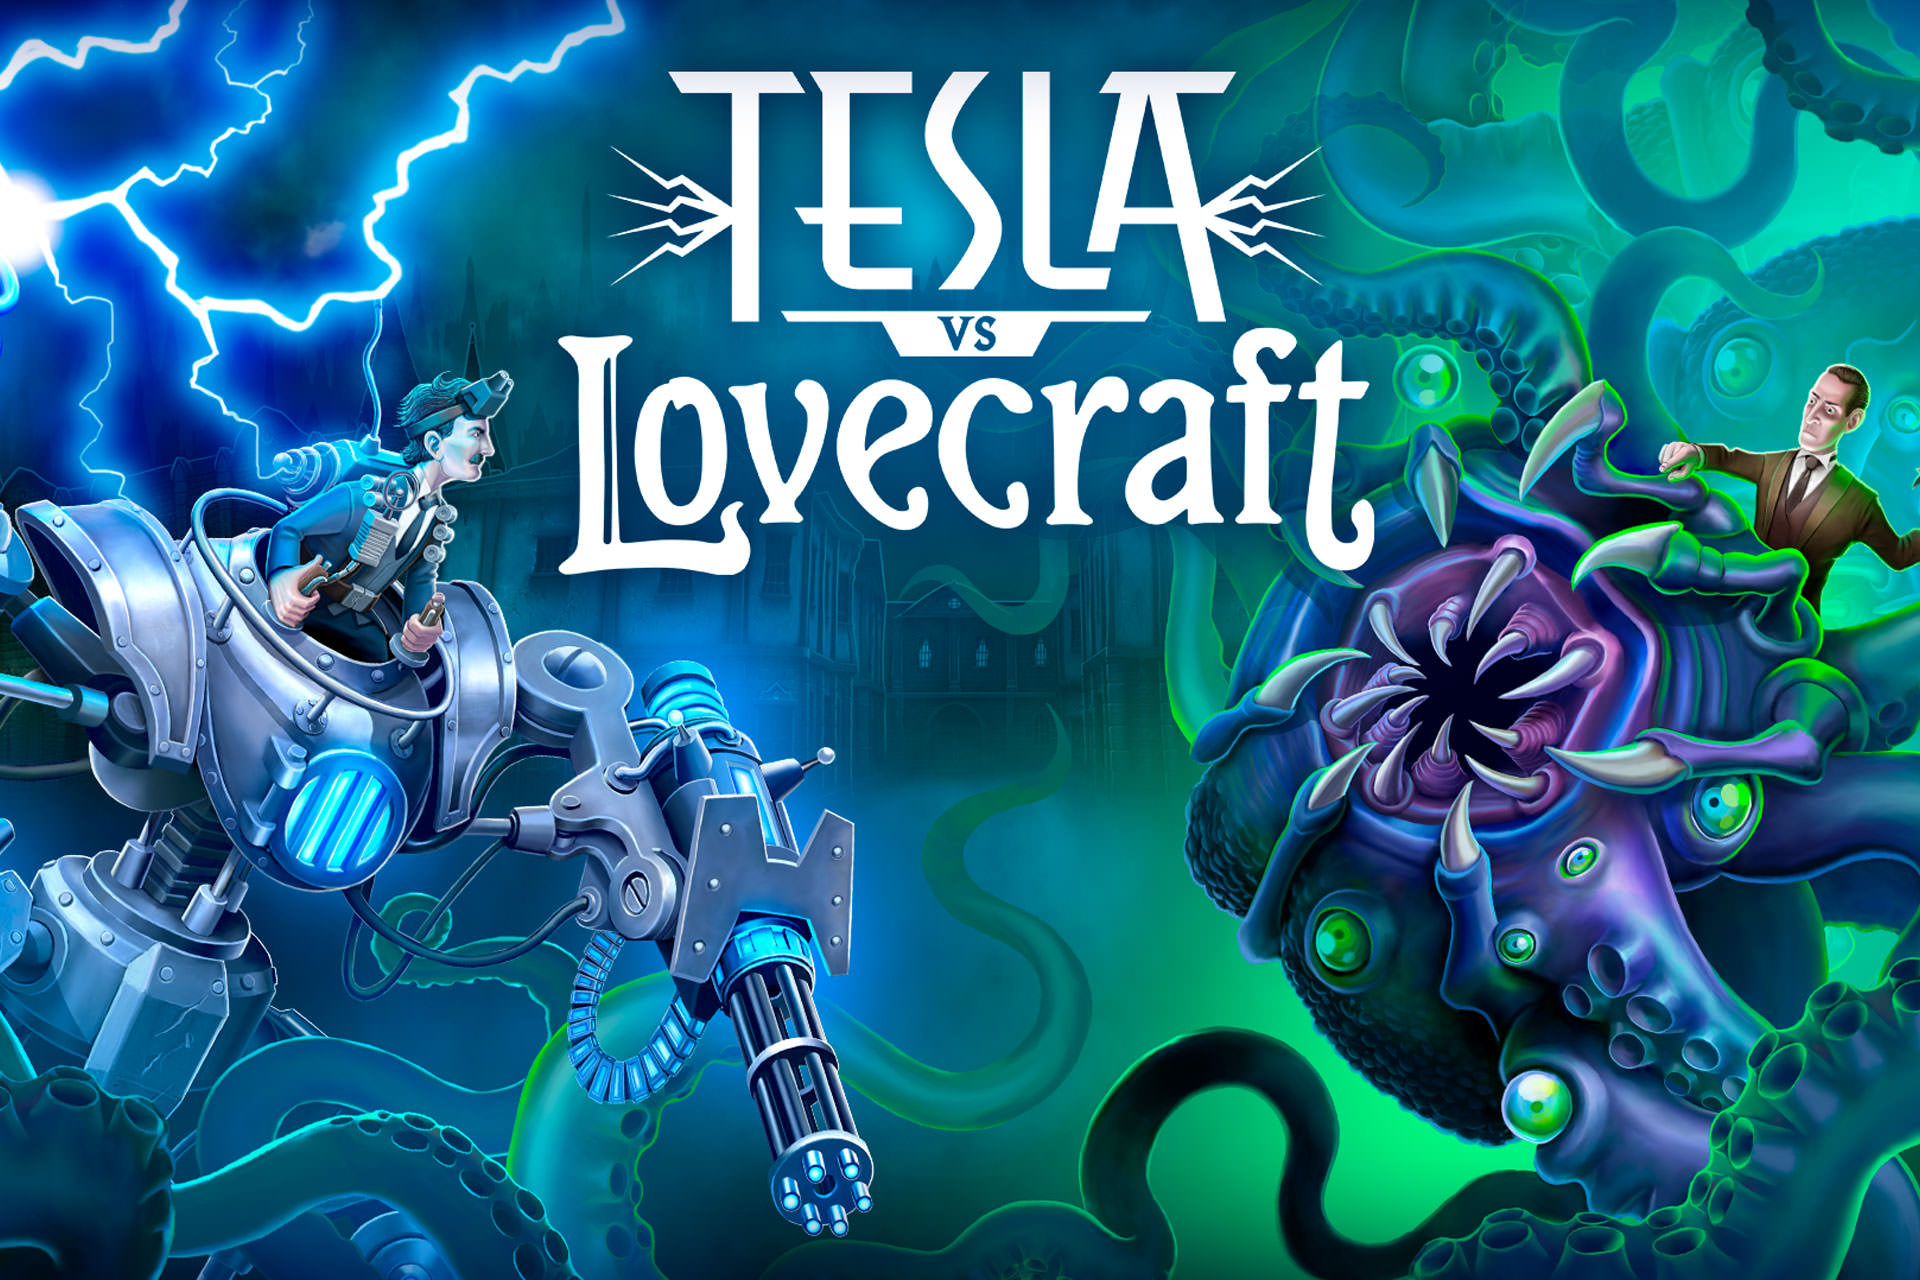 بررسی بازی موبایل Tesla vs Lovecraft